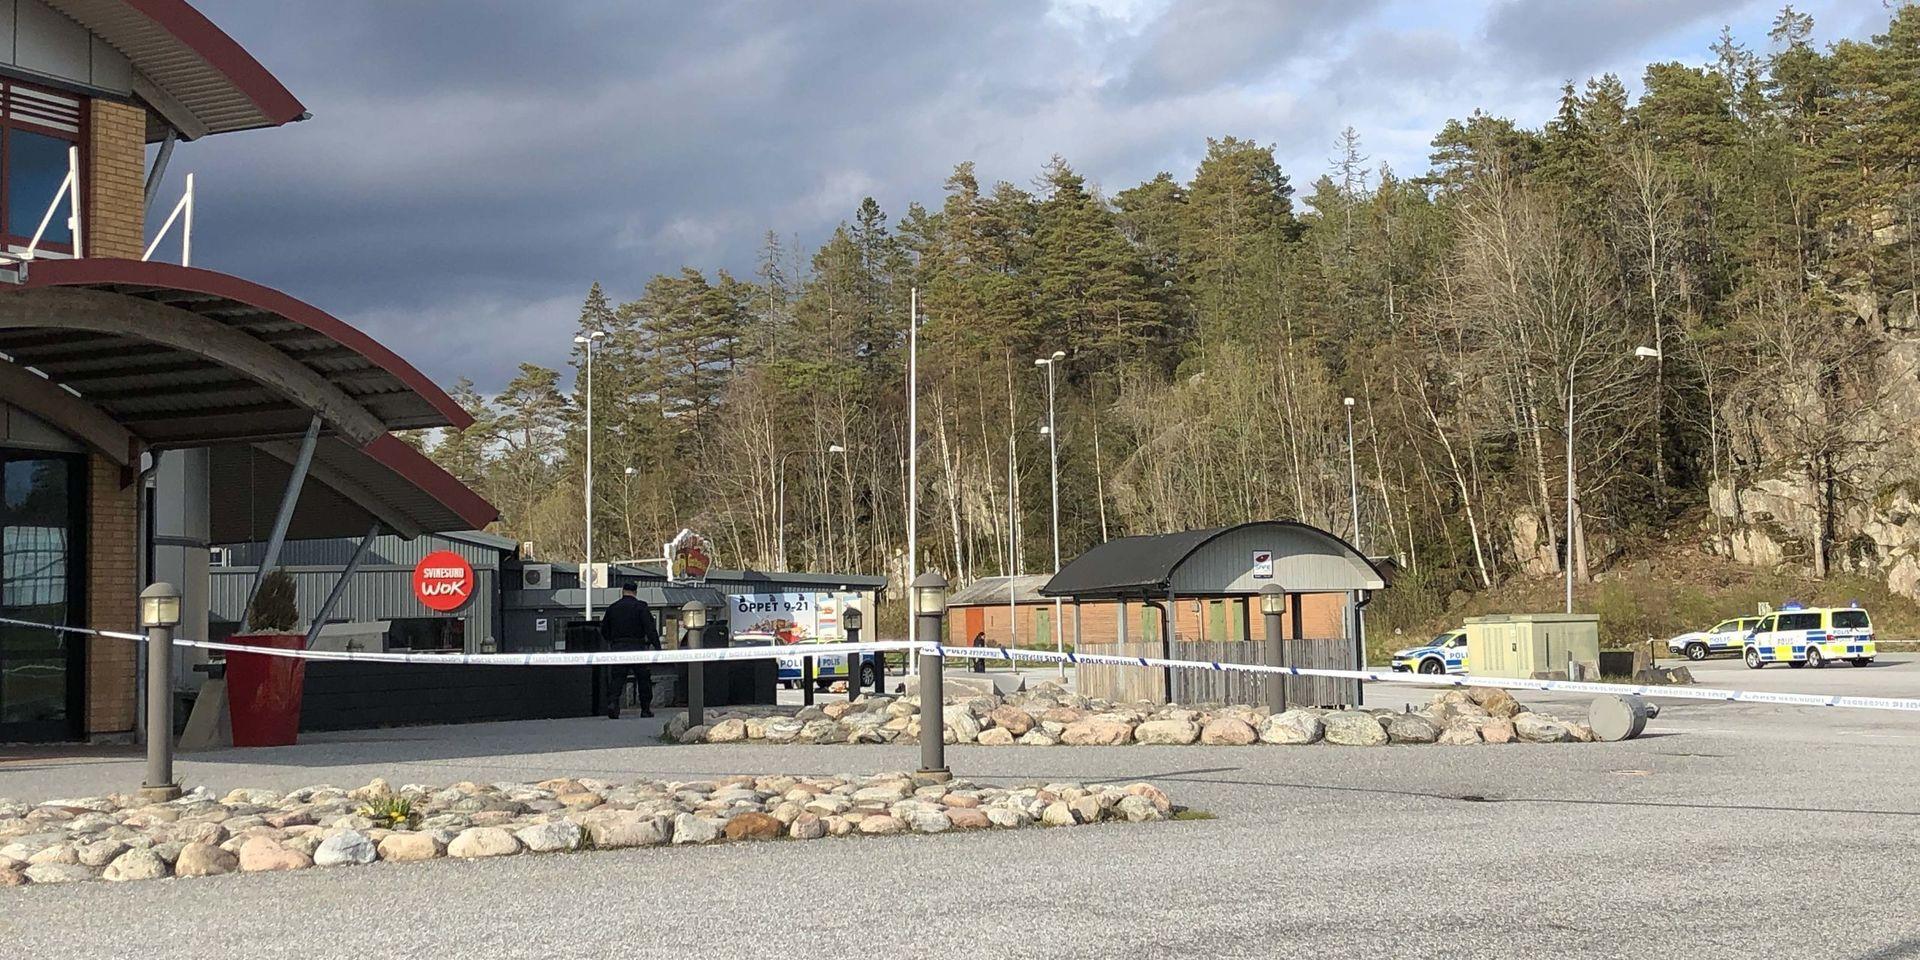 Platsen på Svinesunds handelsområde där händelserna inträffade var avspärrad under fredagseftermiddagen men öppnas under lördagen.